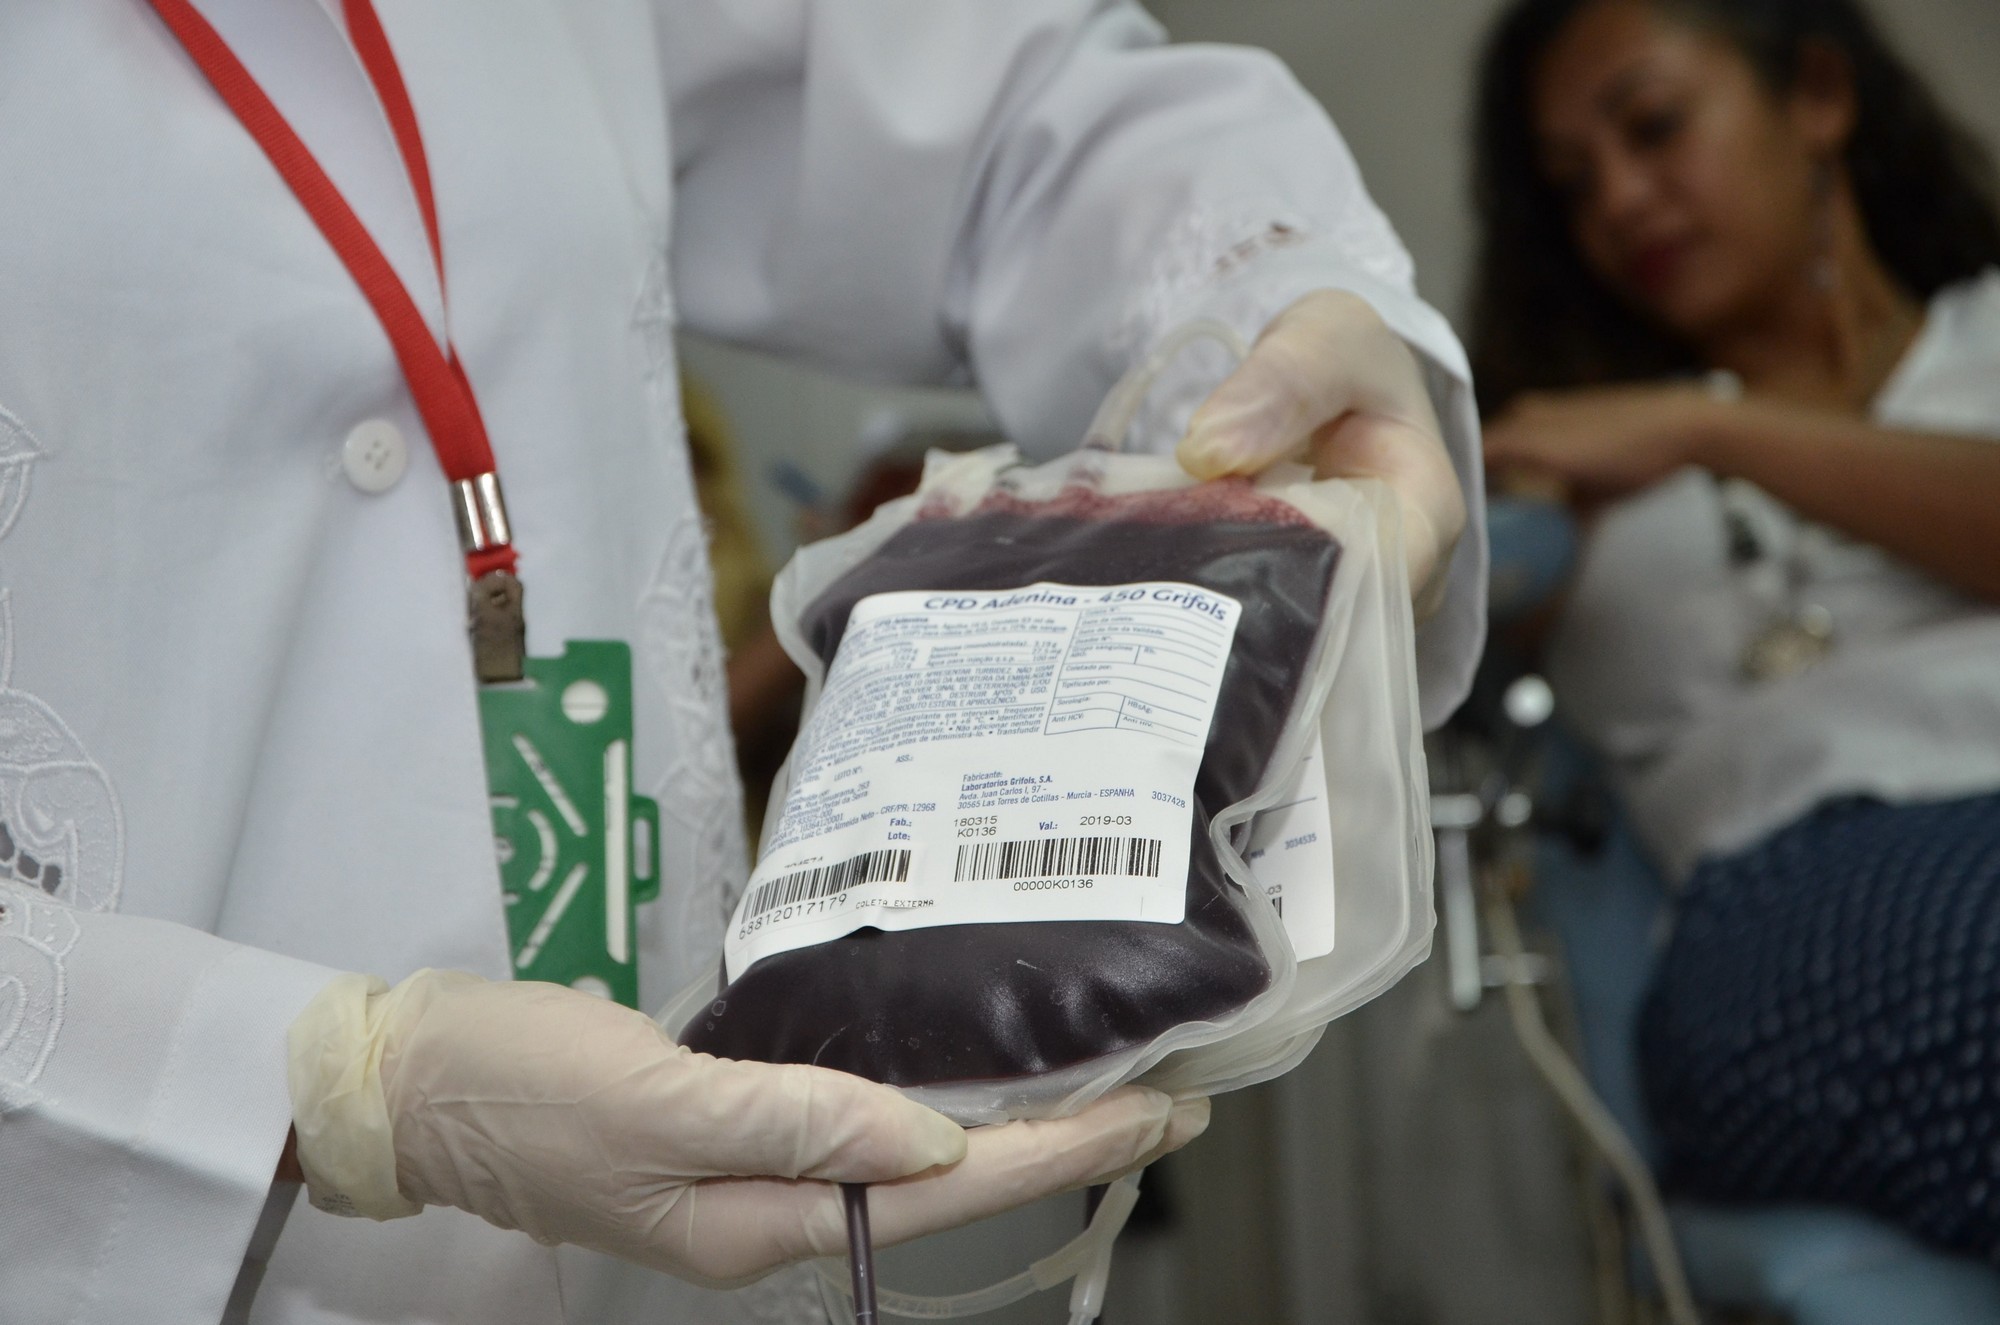 Hemominas de Divinópolis apresenta estoque crítico e de alerta em seis tipos sanguíneos 